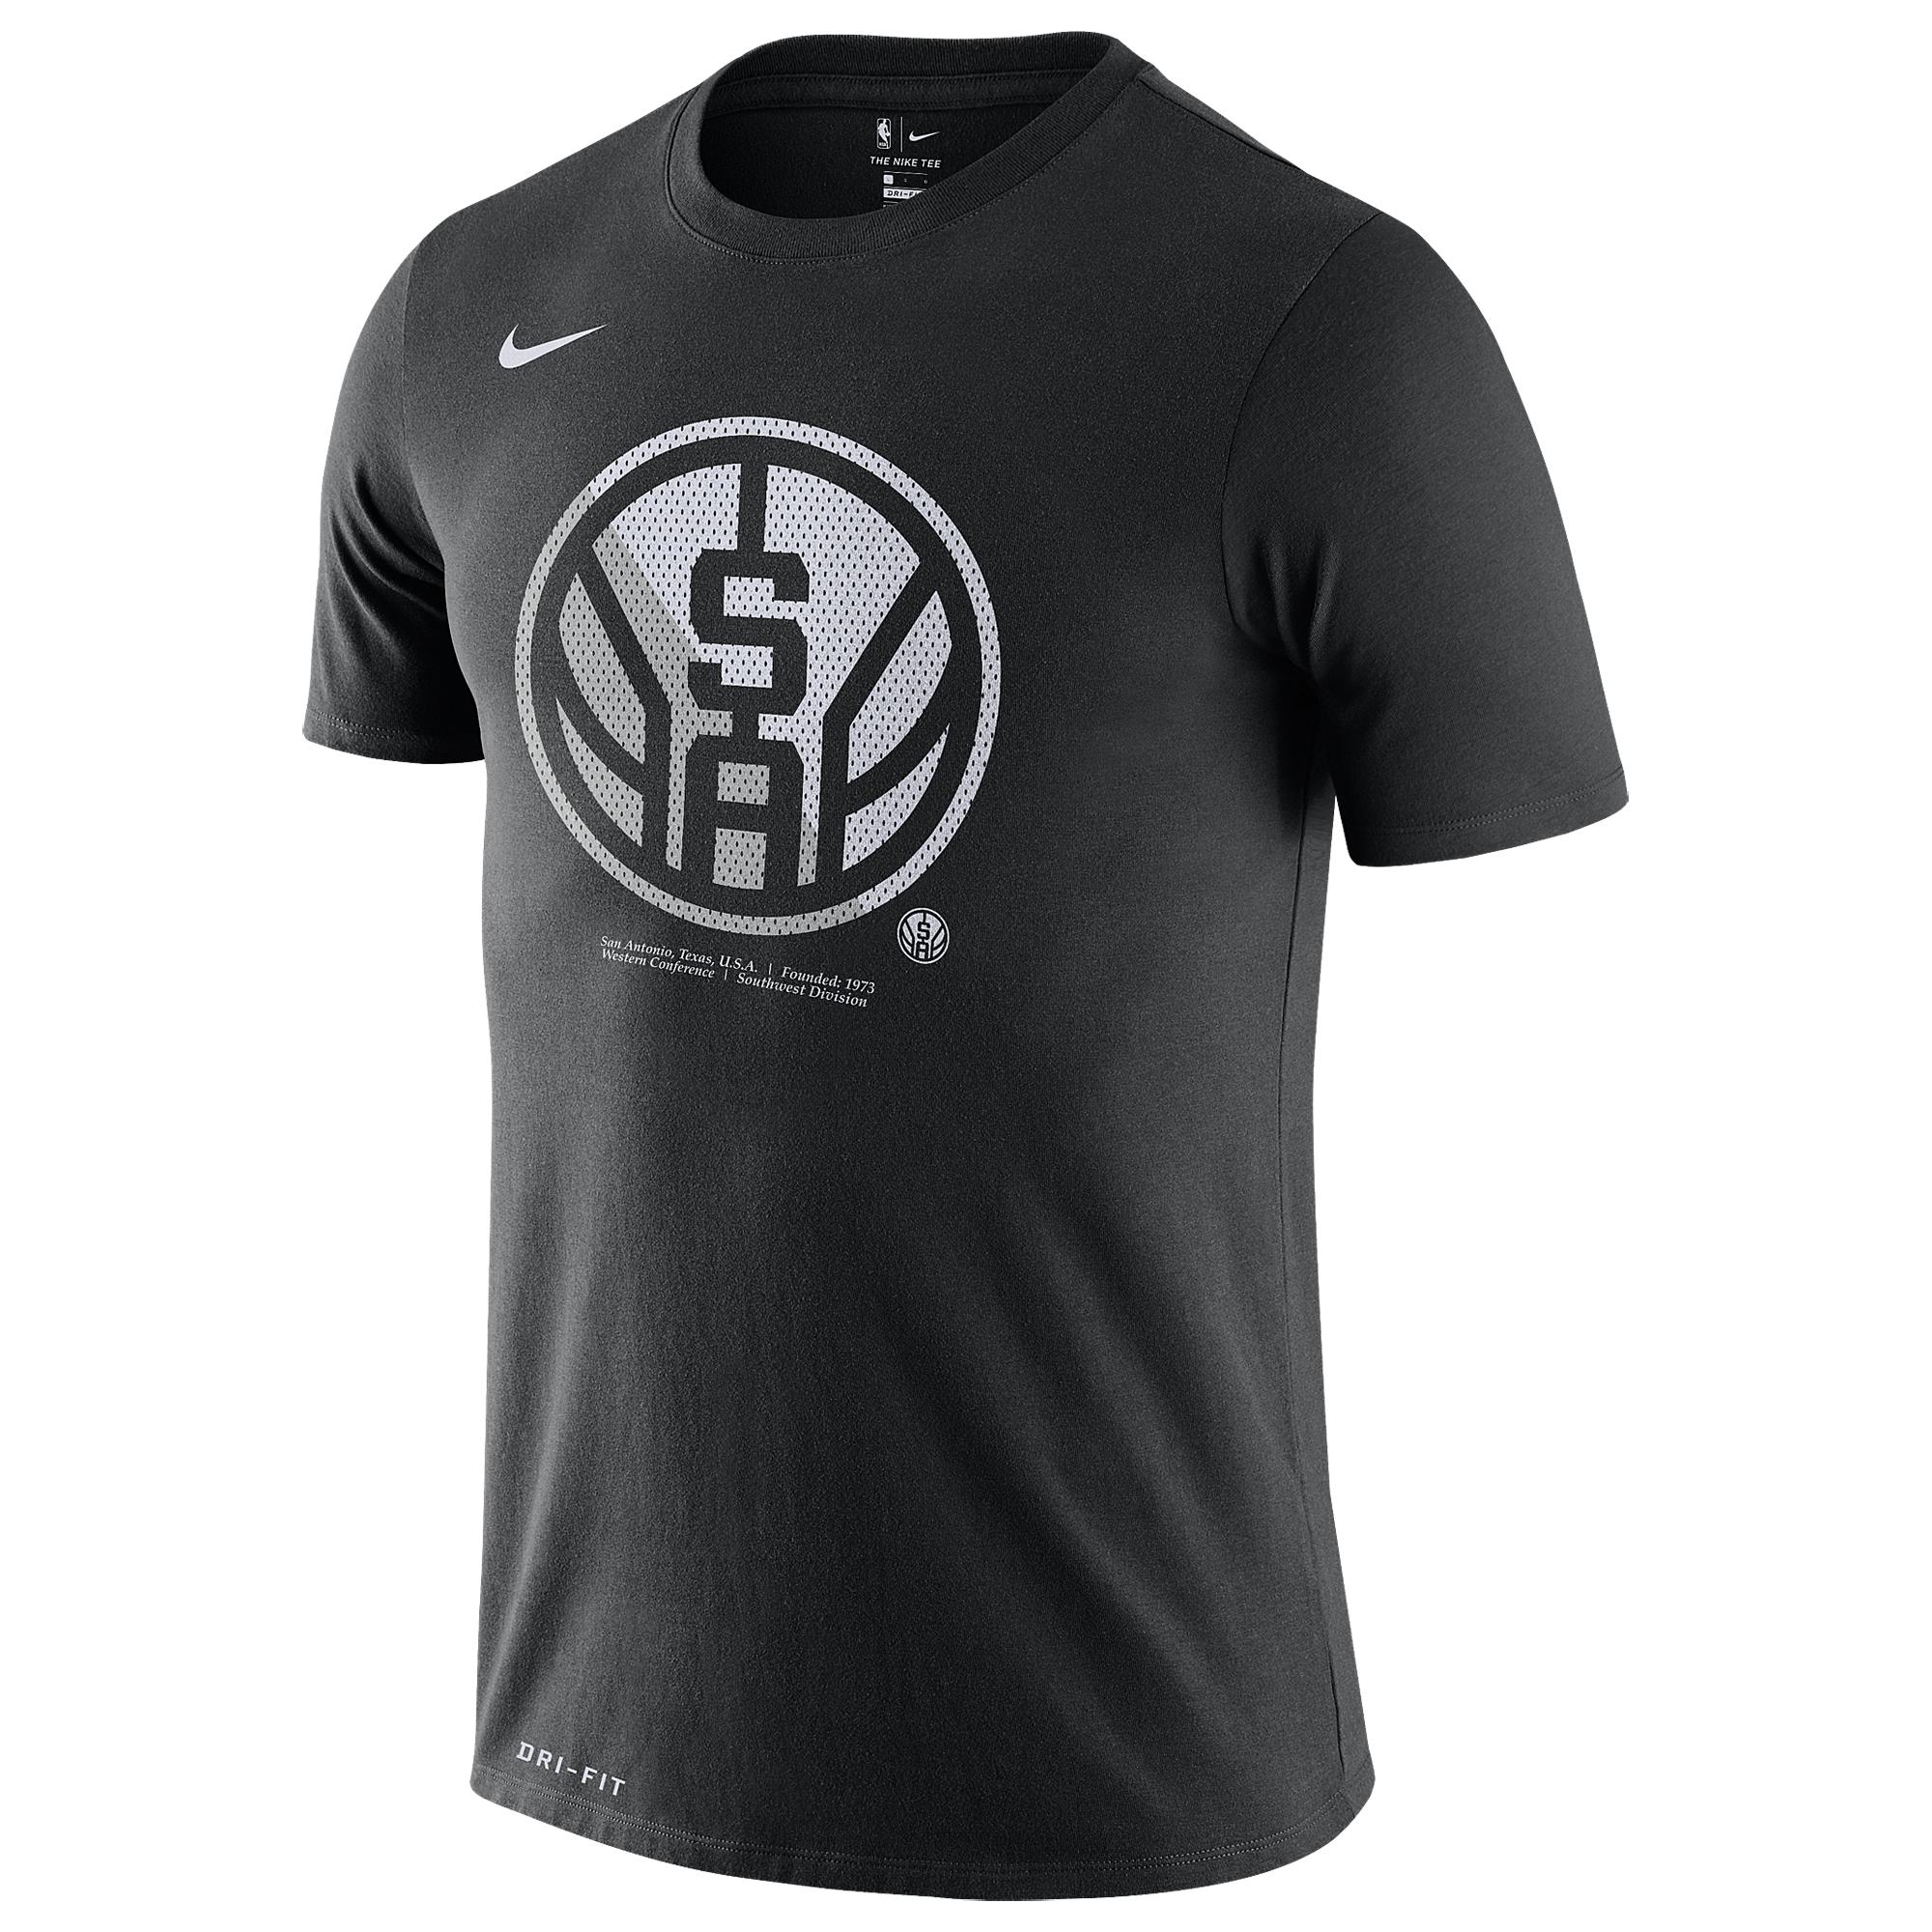 Nike Cotton Nba Split Logo T-shirt in Black for Men - Lyst